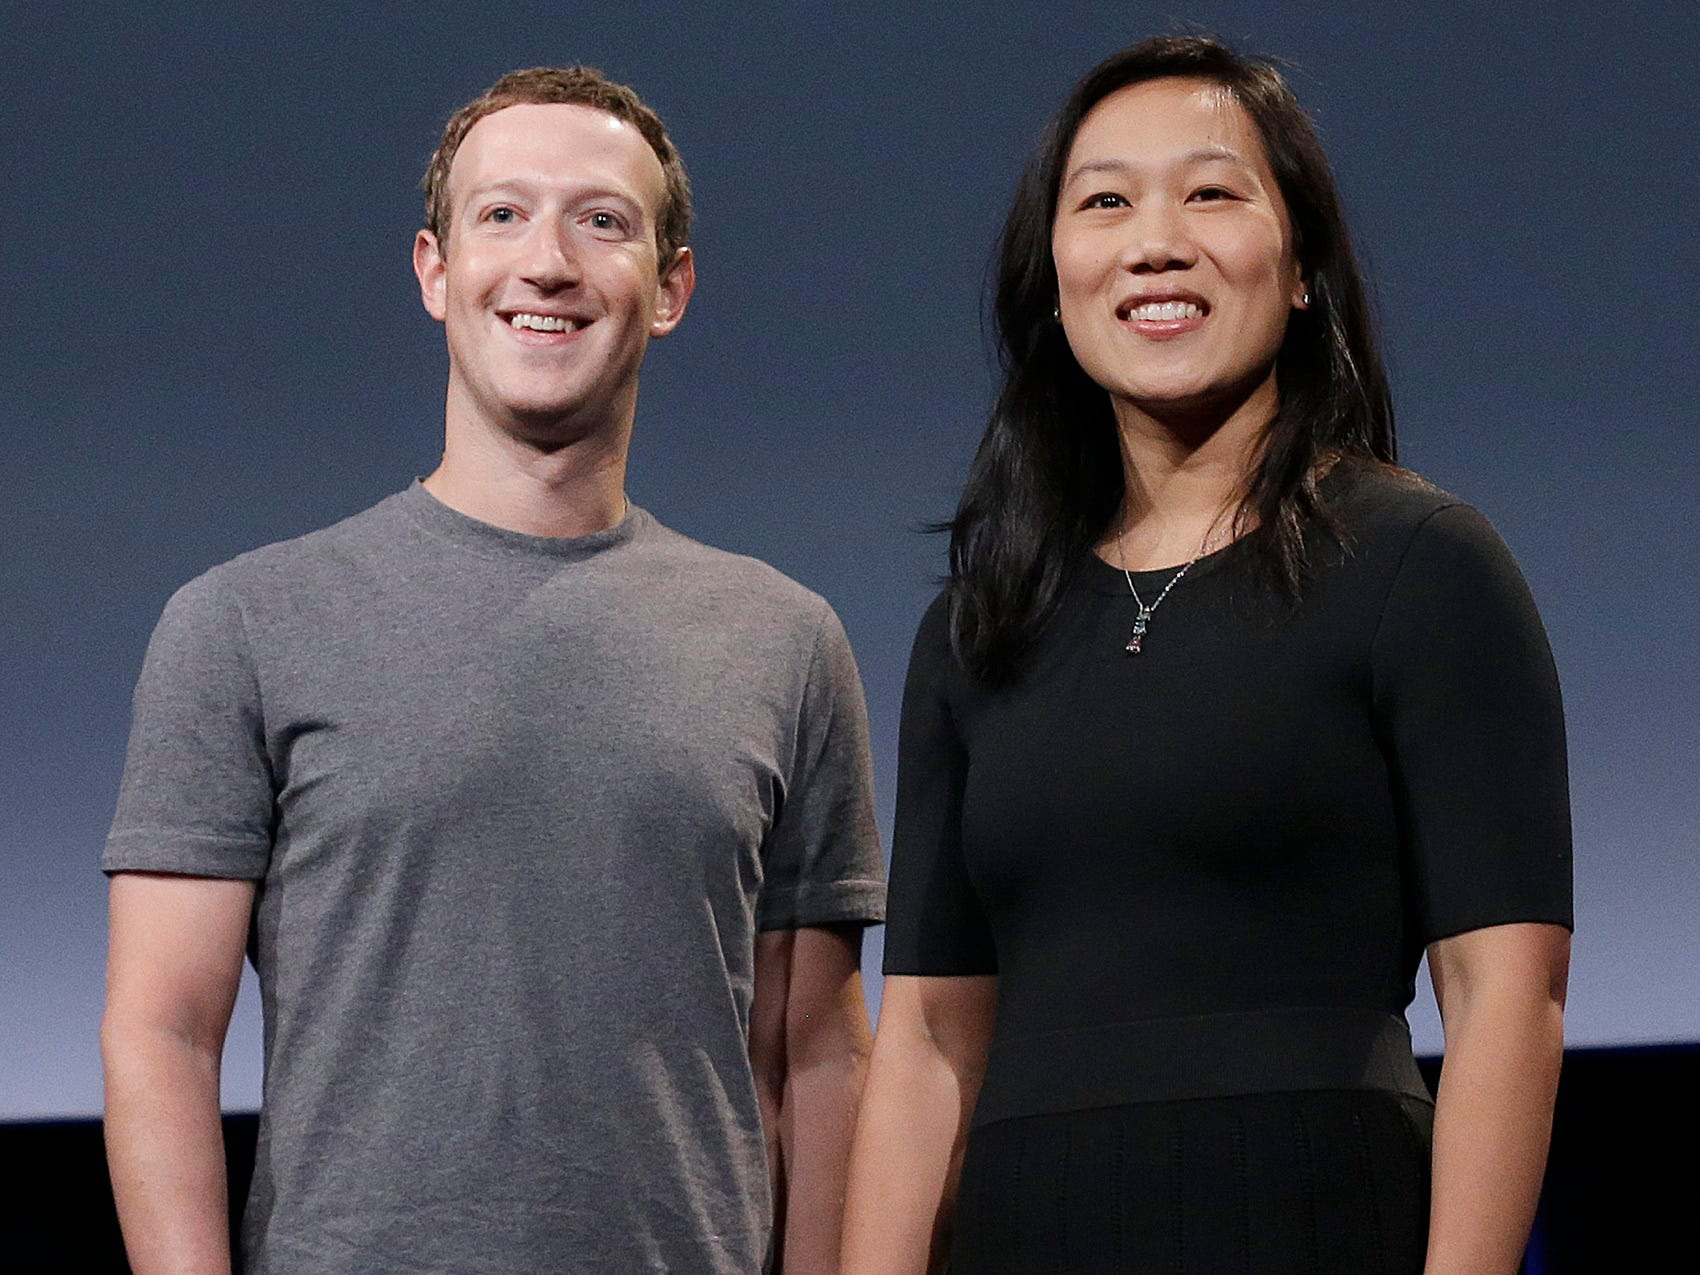 Hết mình vì công việc, Mark Zuckerberg từng kết đôi với bạn của vợ trên ứng dụng hẹn hò - Ảnh 1.